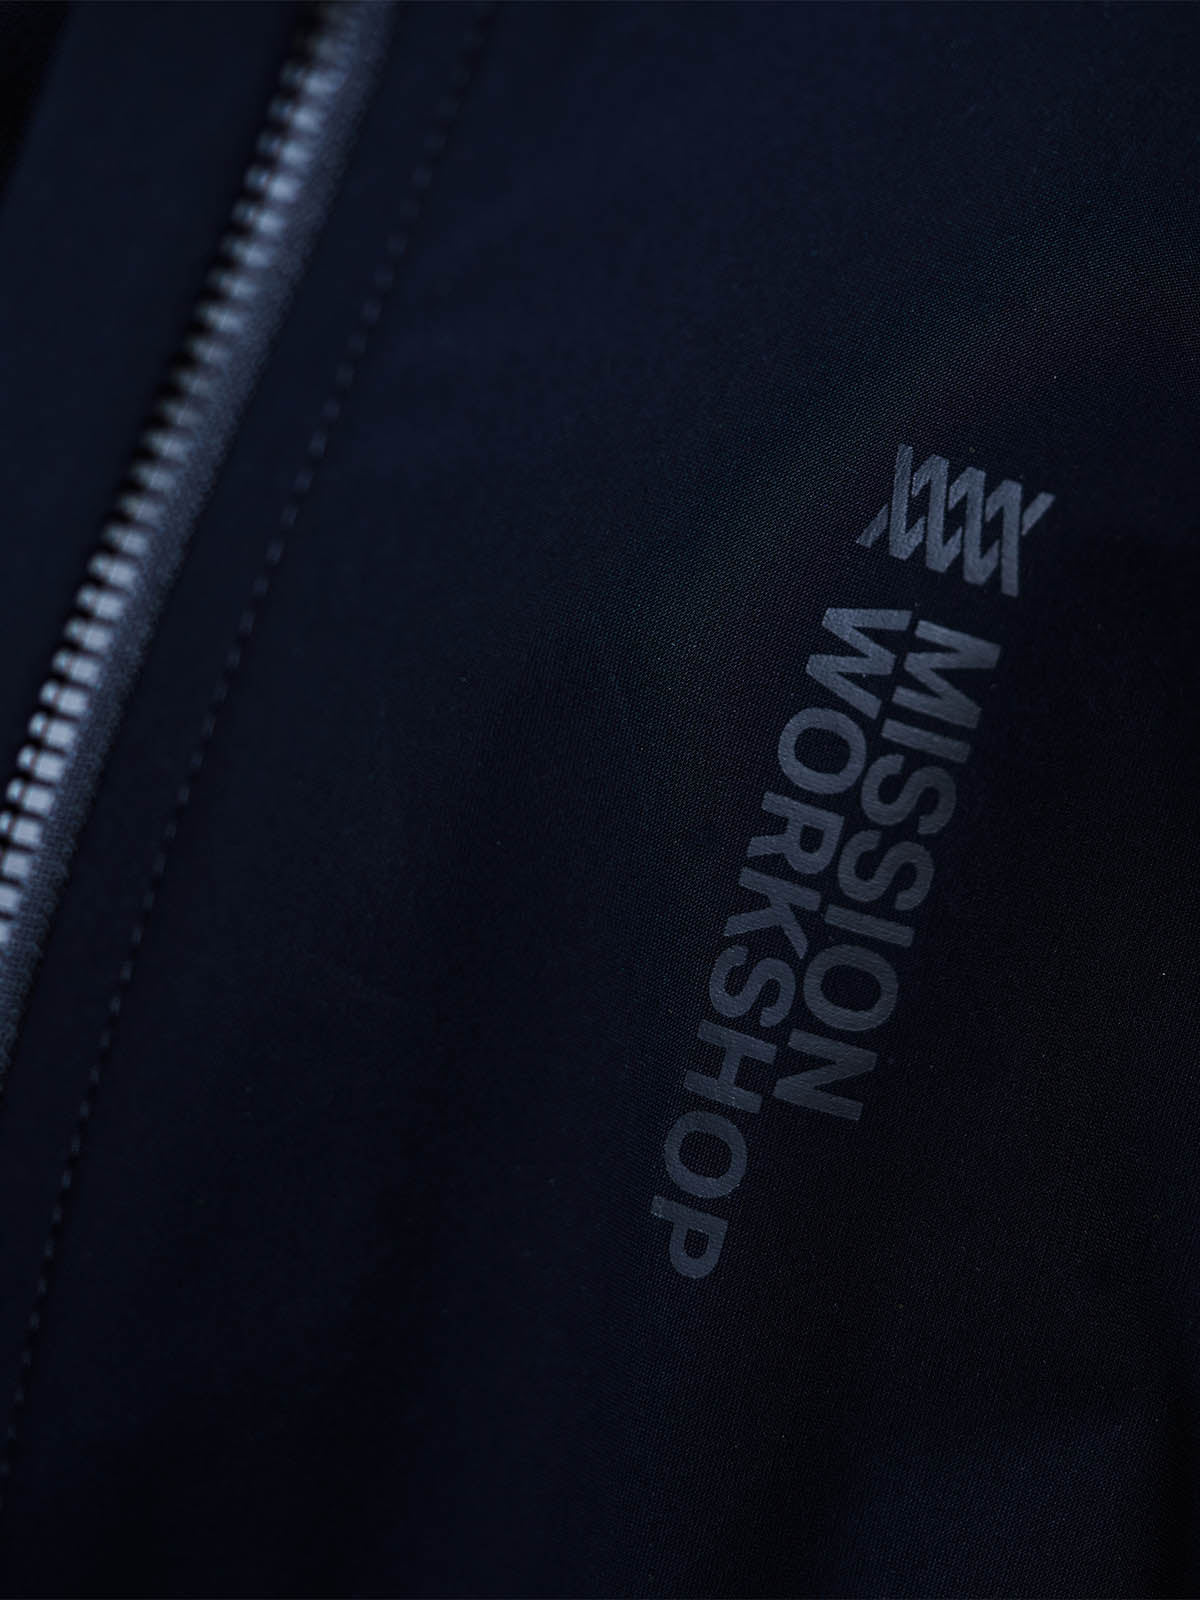 Mission Pro Jersey Women's by Mission Workshop - Bolsas impermeables y ropa técnica - San Francisco y Los Angeles - Construido para durar - Garantizado para siempre